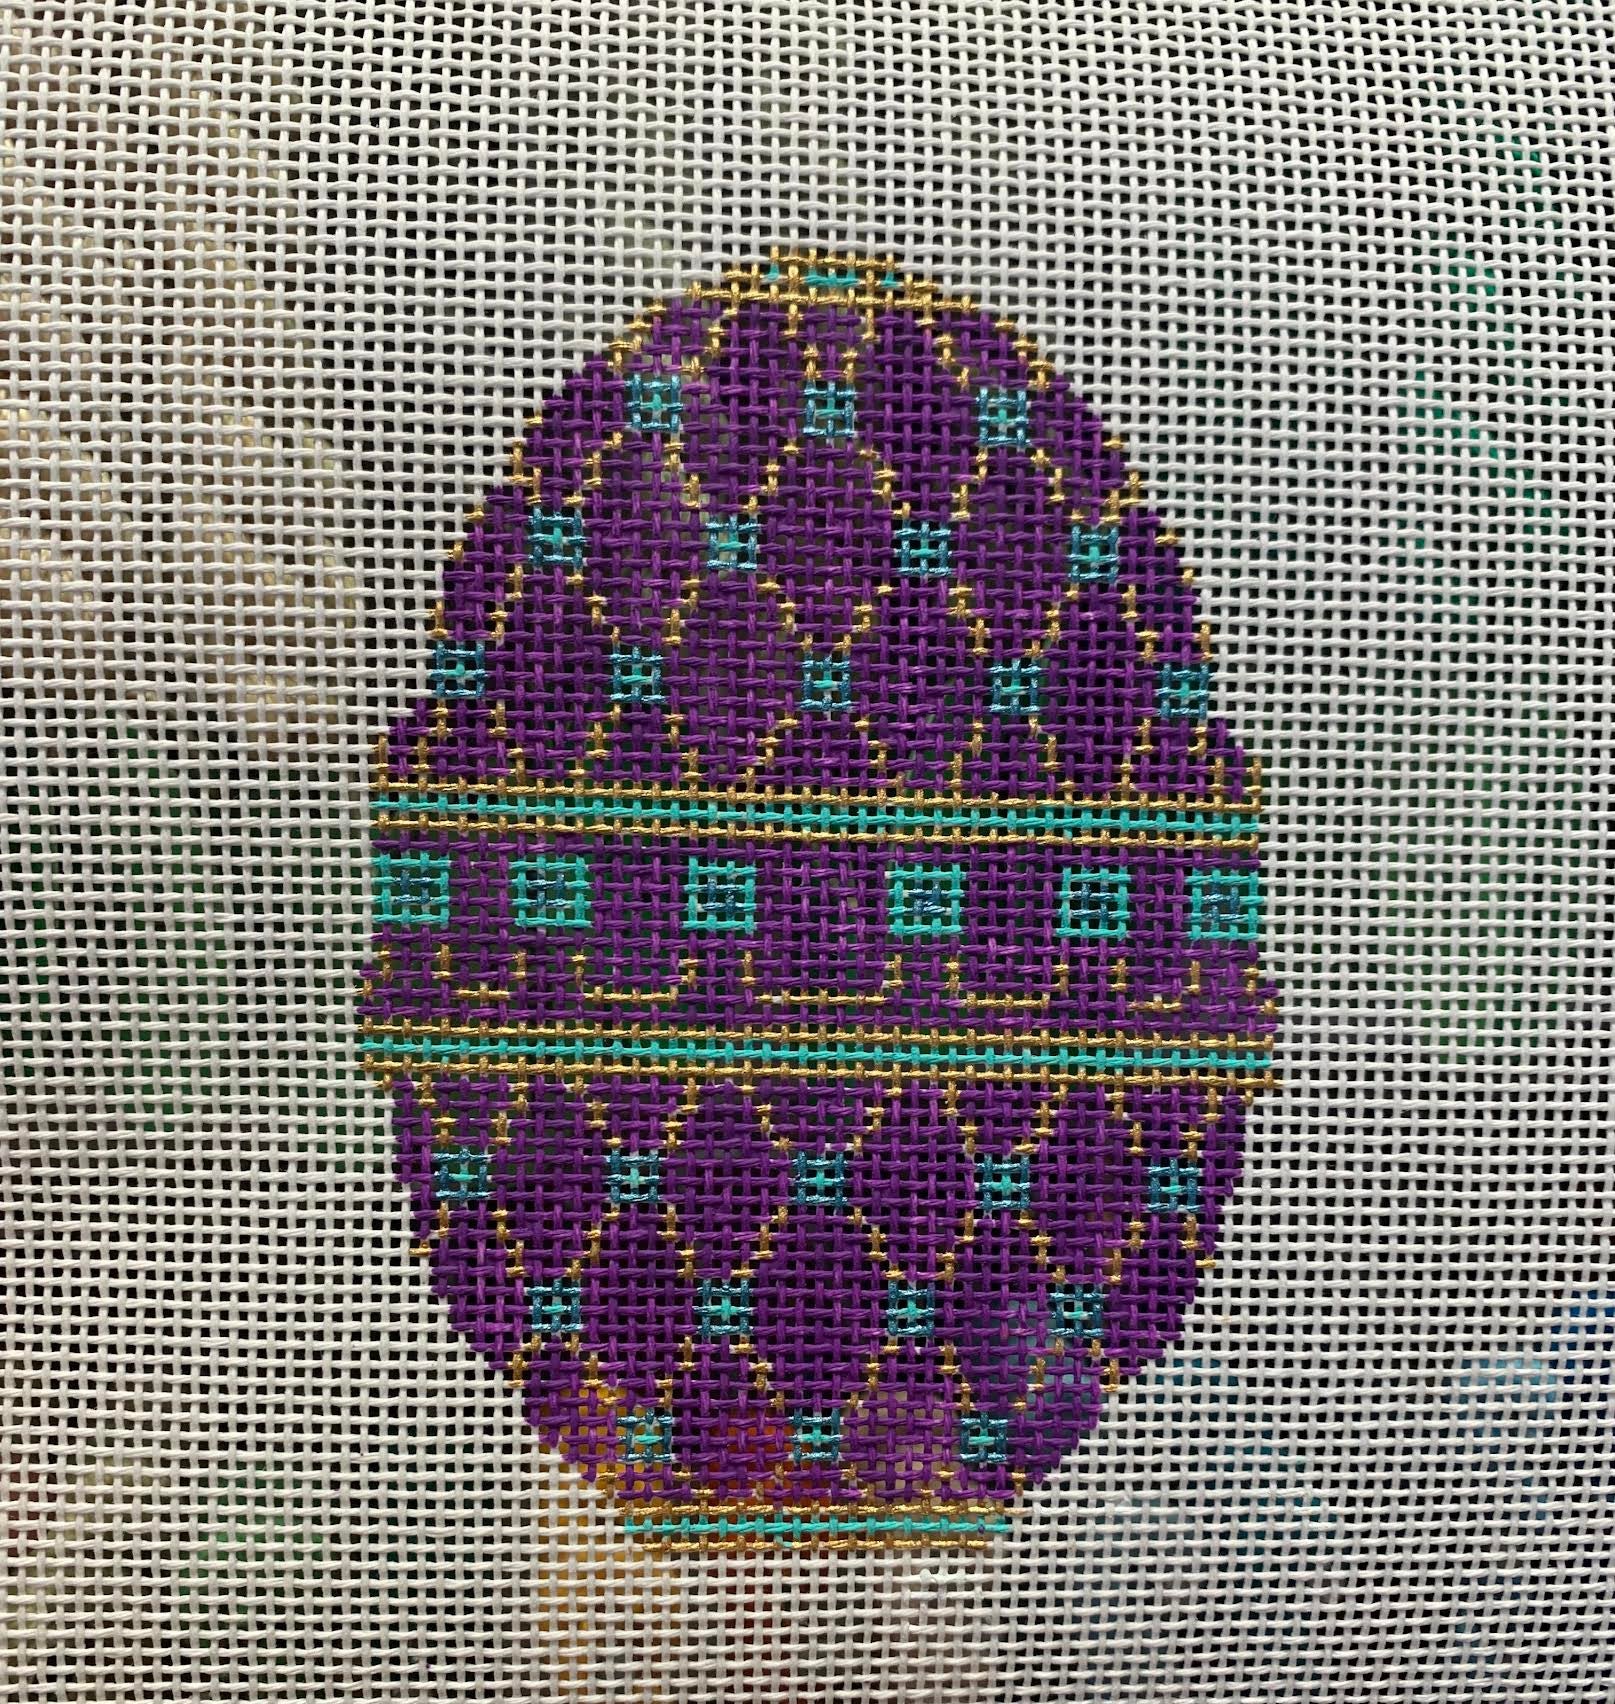 TEW 12 13 mesh Easter egg